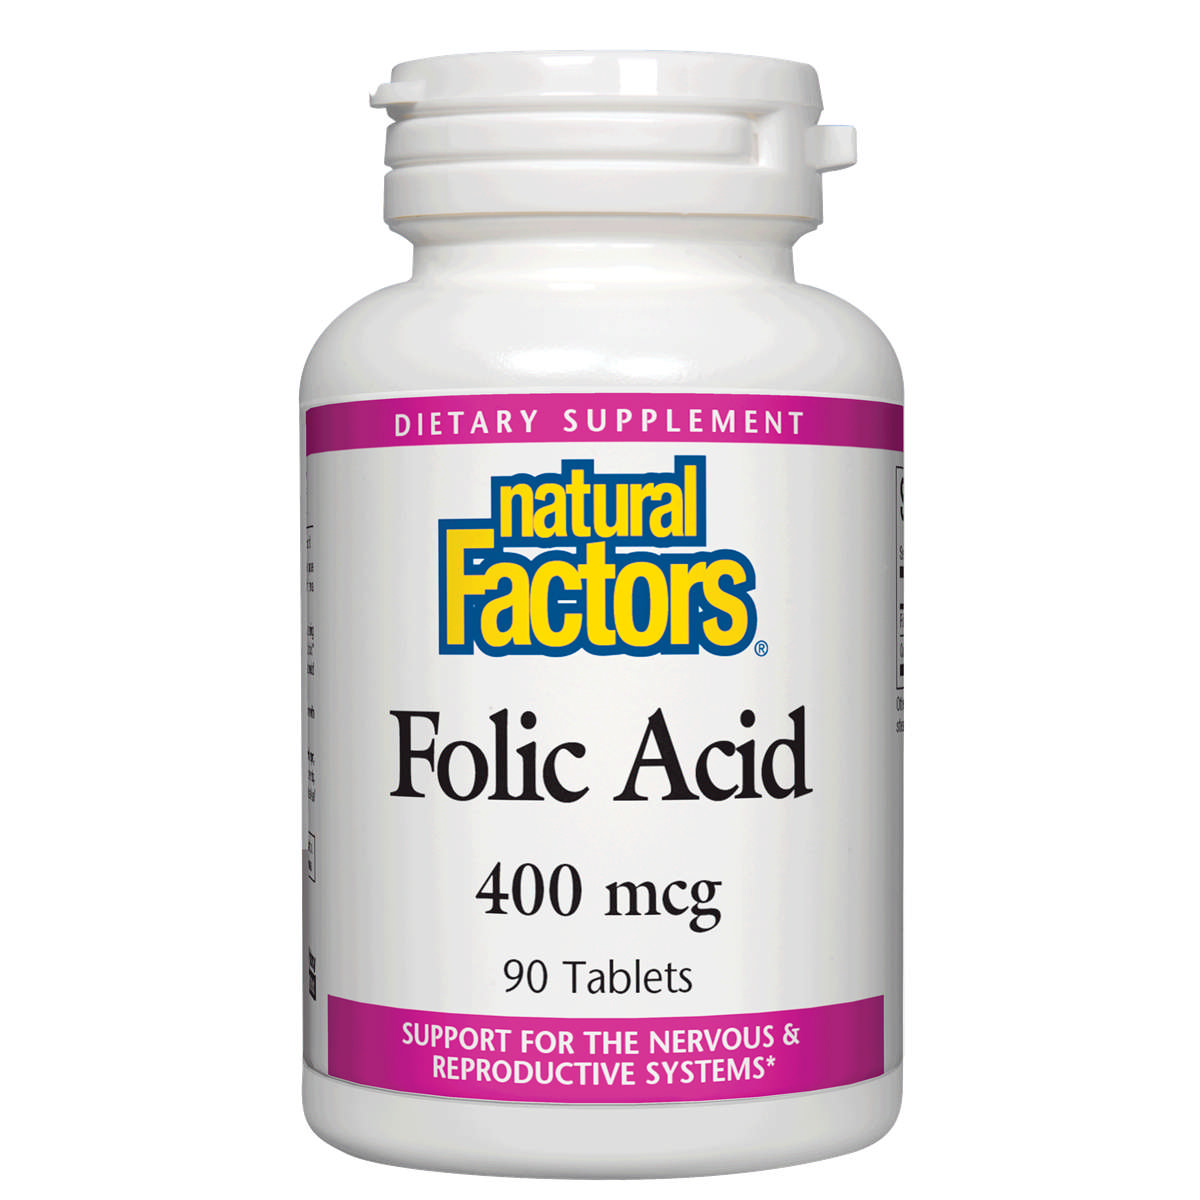 Natural Factors - Folic Acid 400 mcg